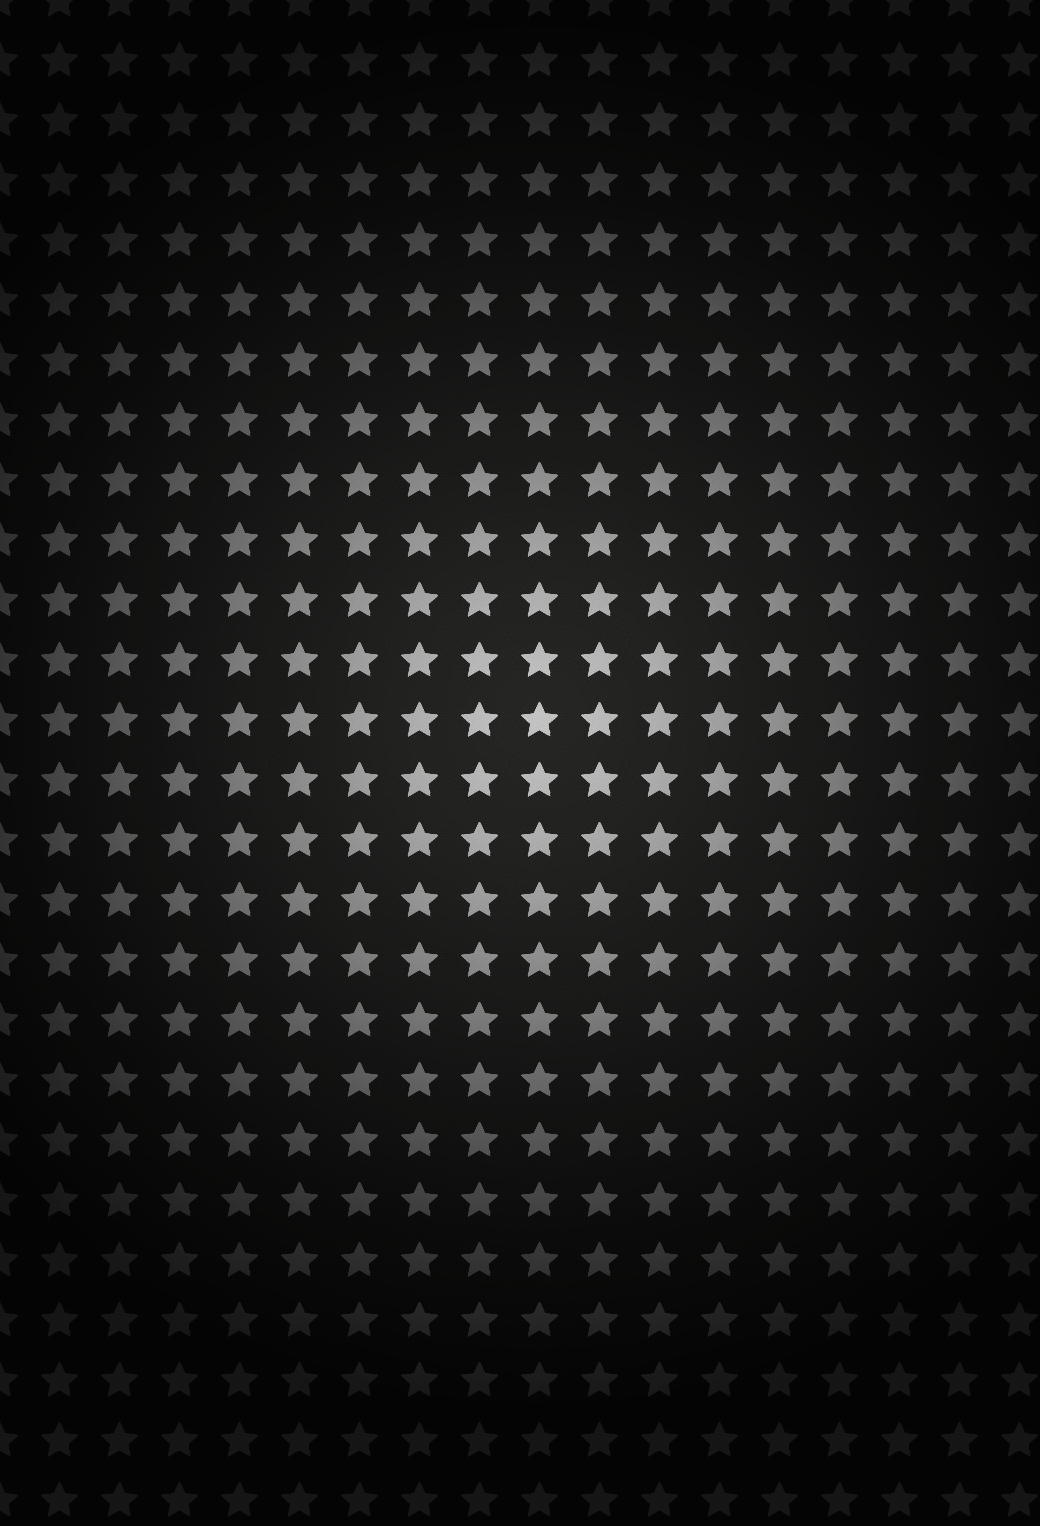 星のパターン 130 Iphone壁紙 すべて1136 X 640pxサイズ